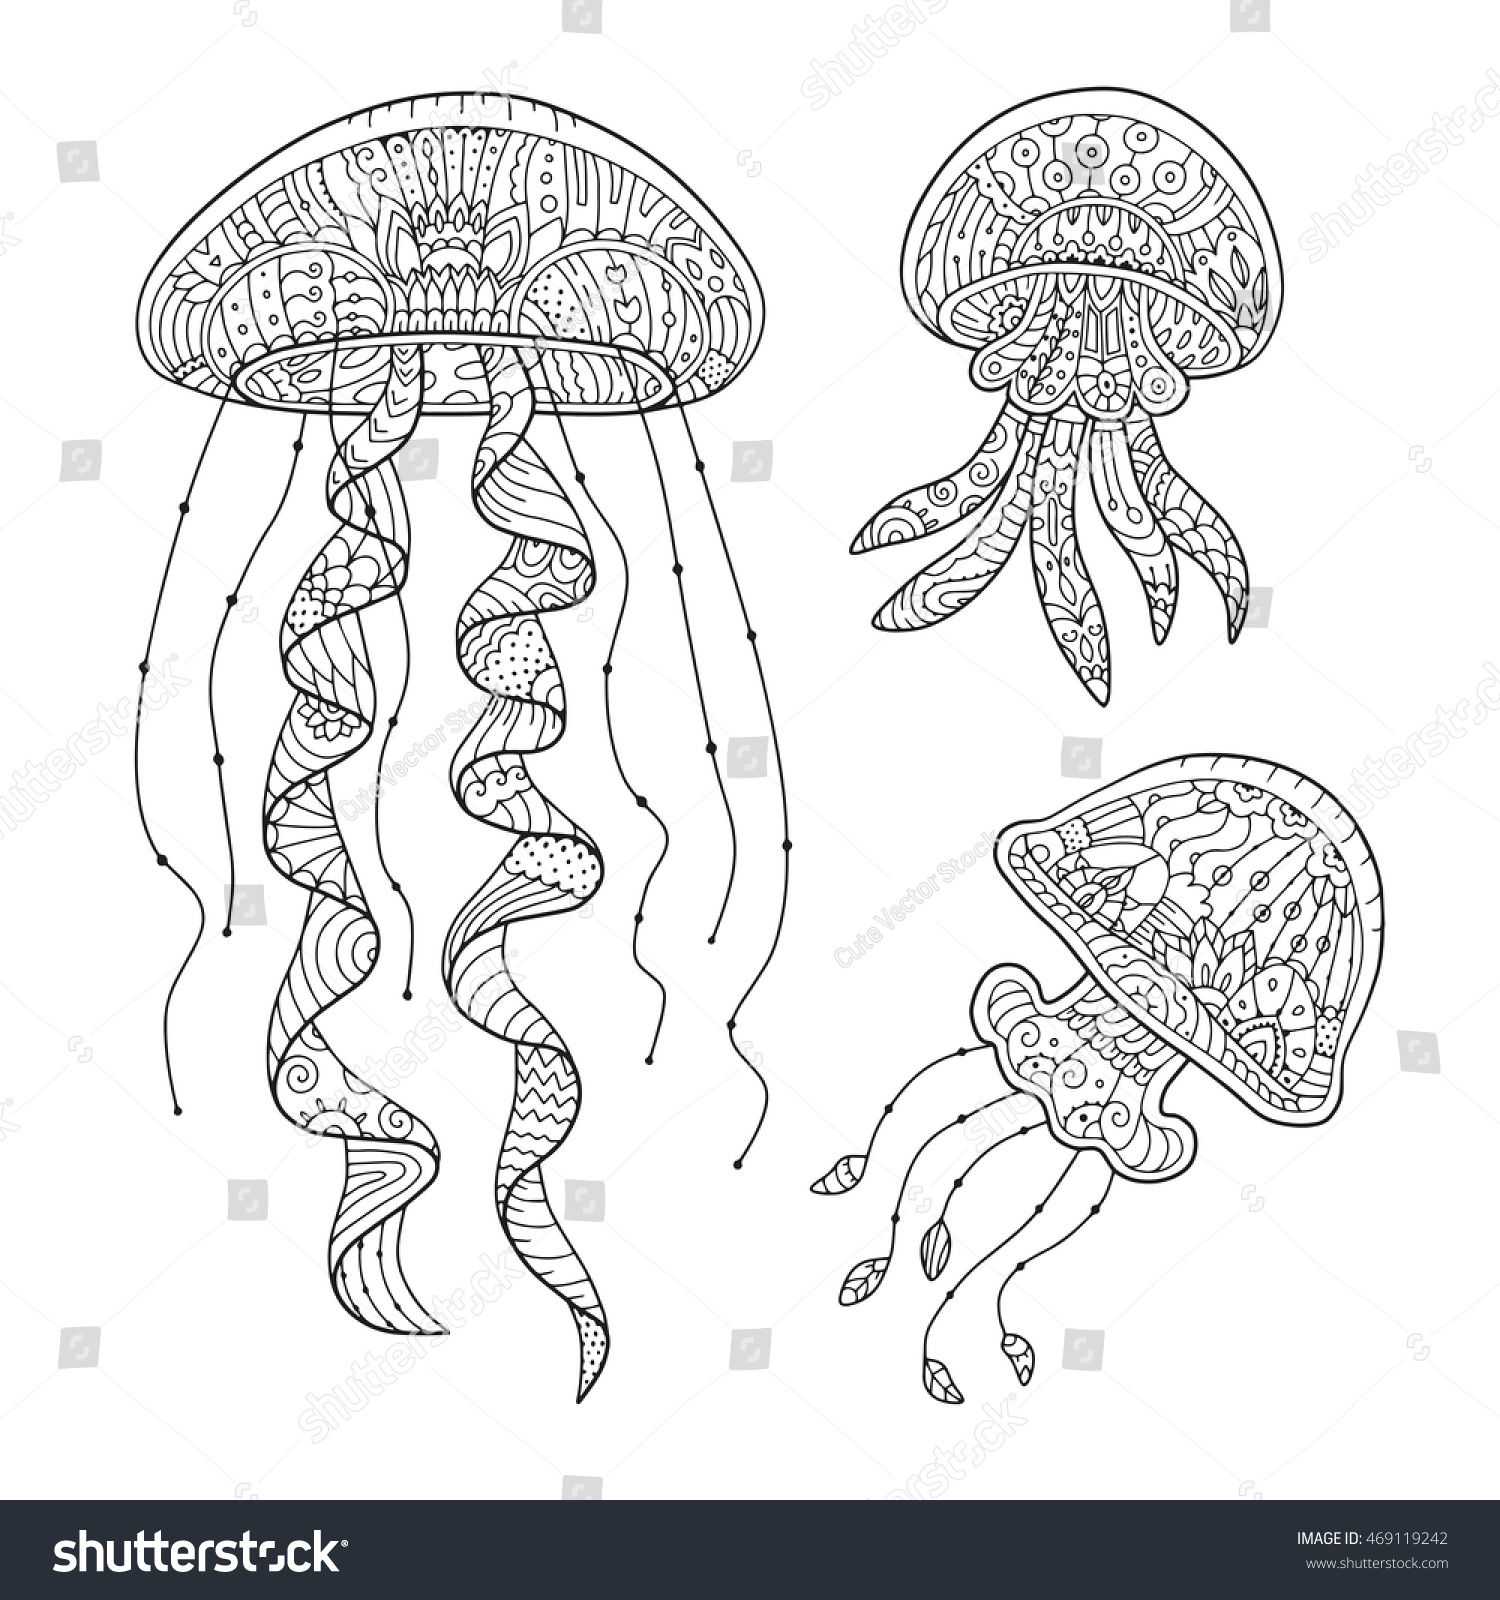 Медуза раскраска реалистичная